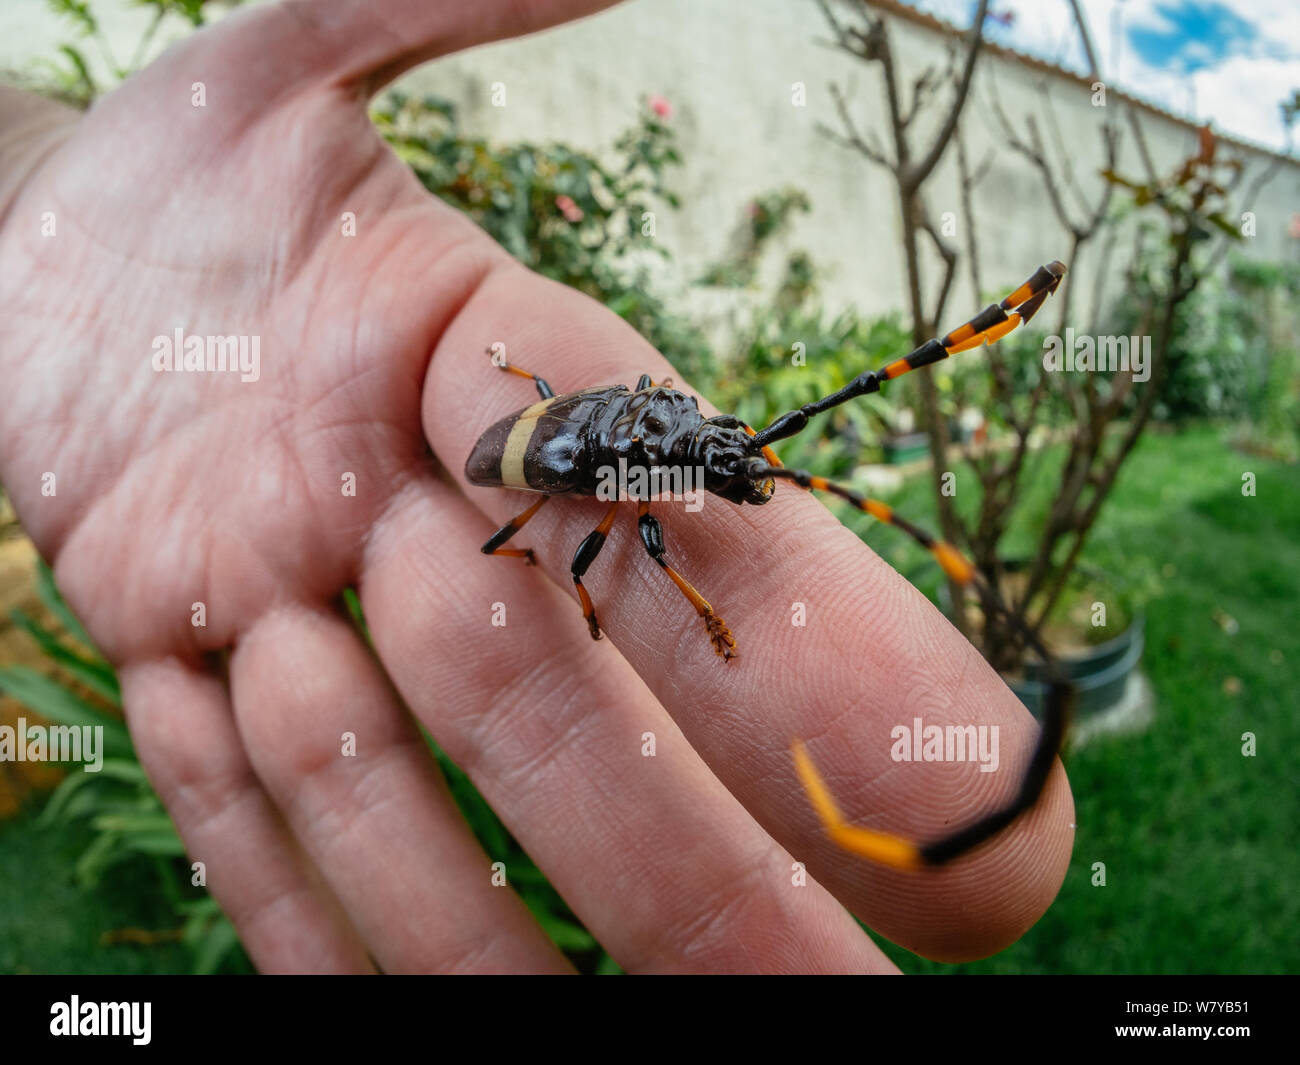 Avec longicorne grande antenne sur une main humaine, d'insectes trouvés dans un jardin Banque D'Images